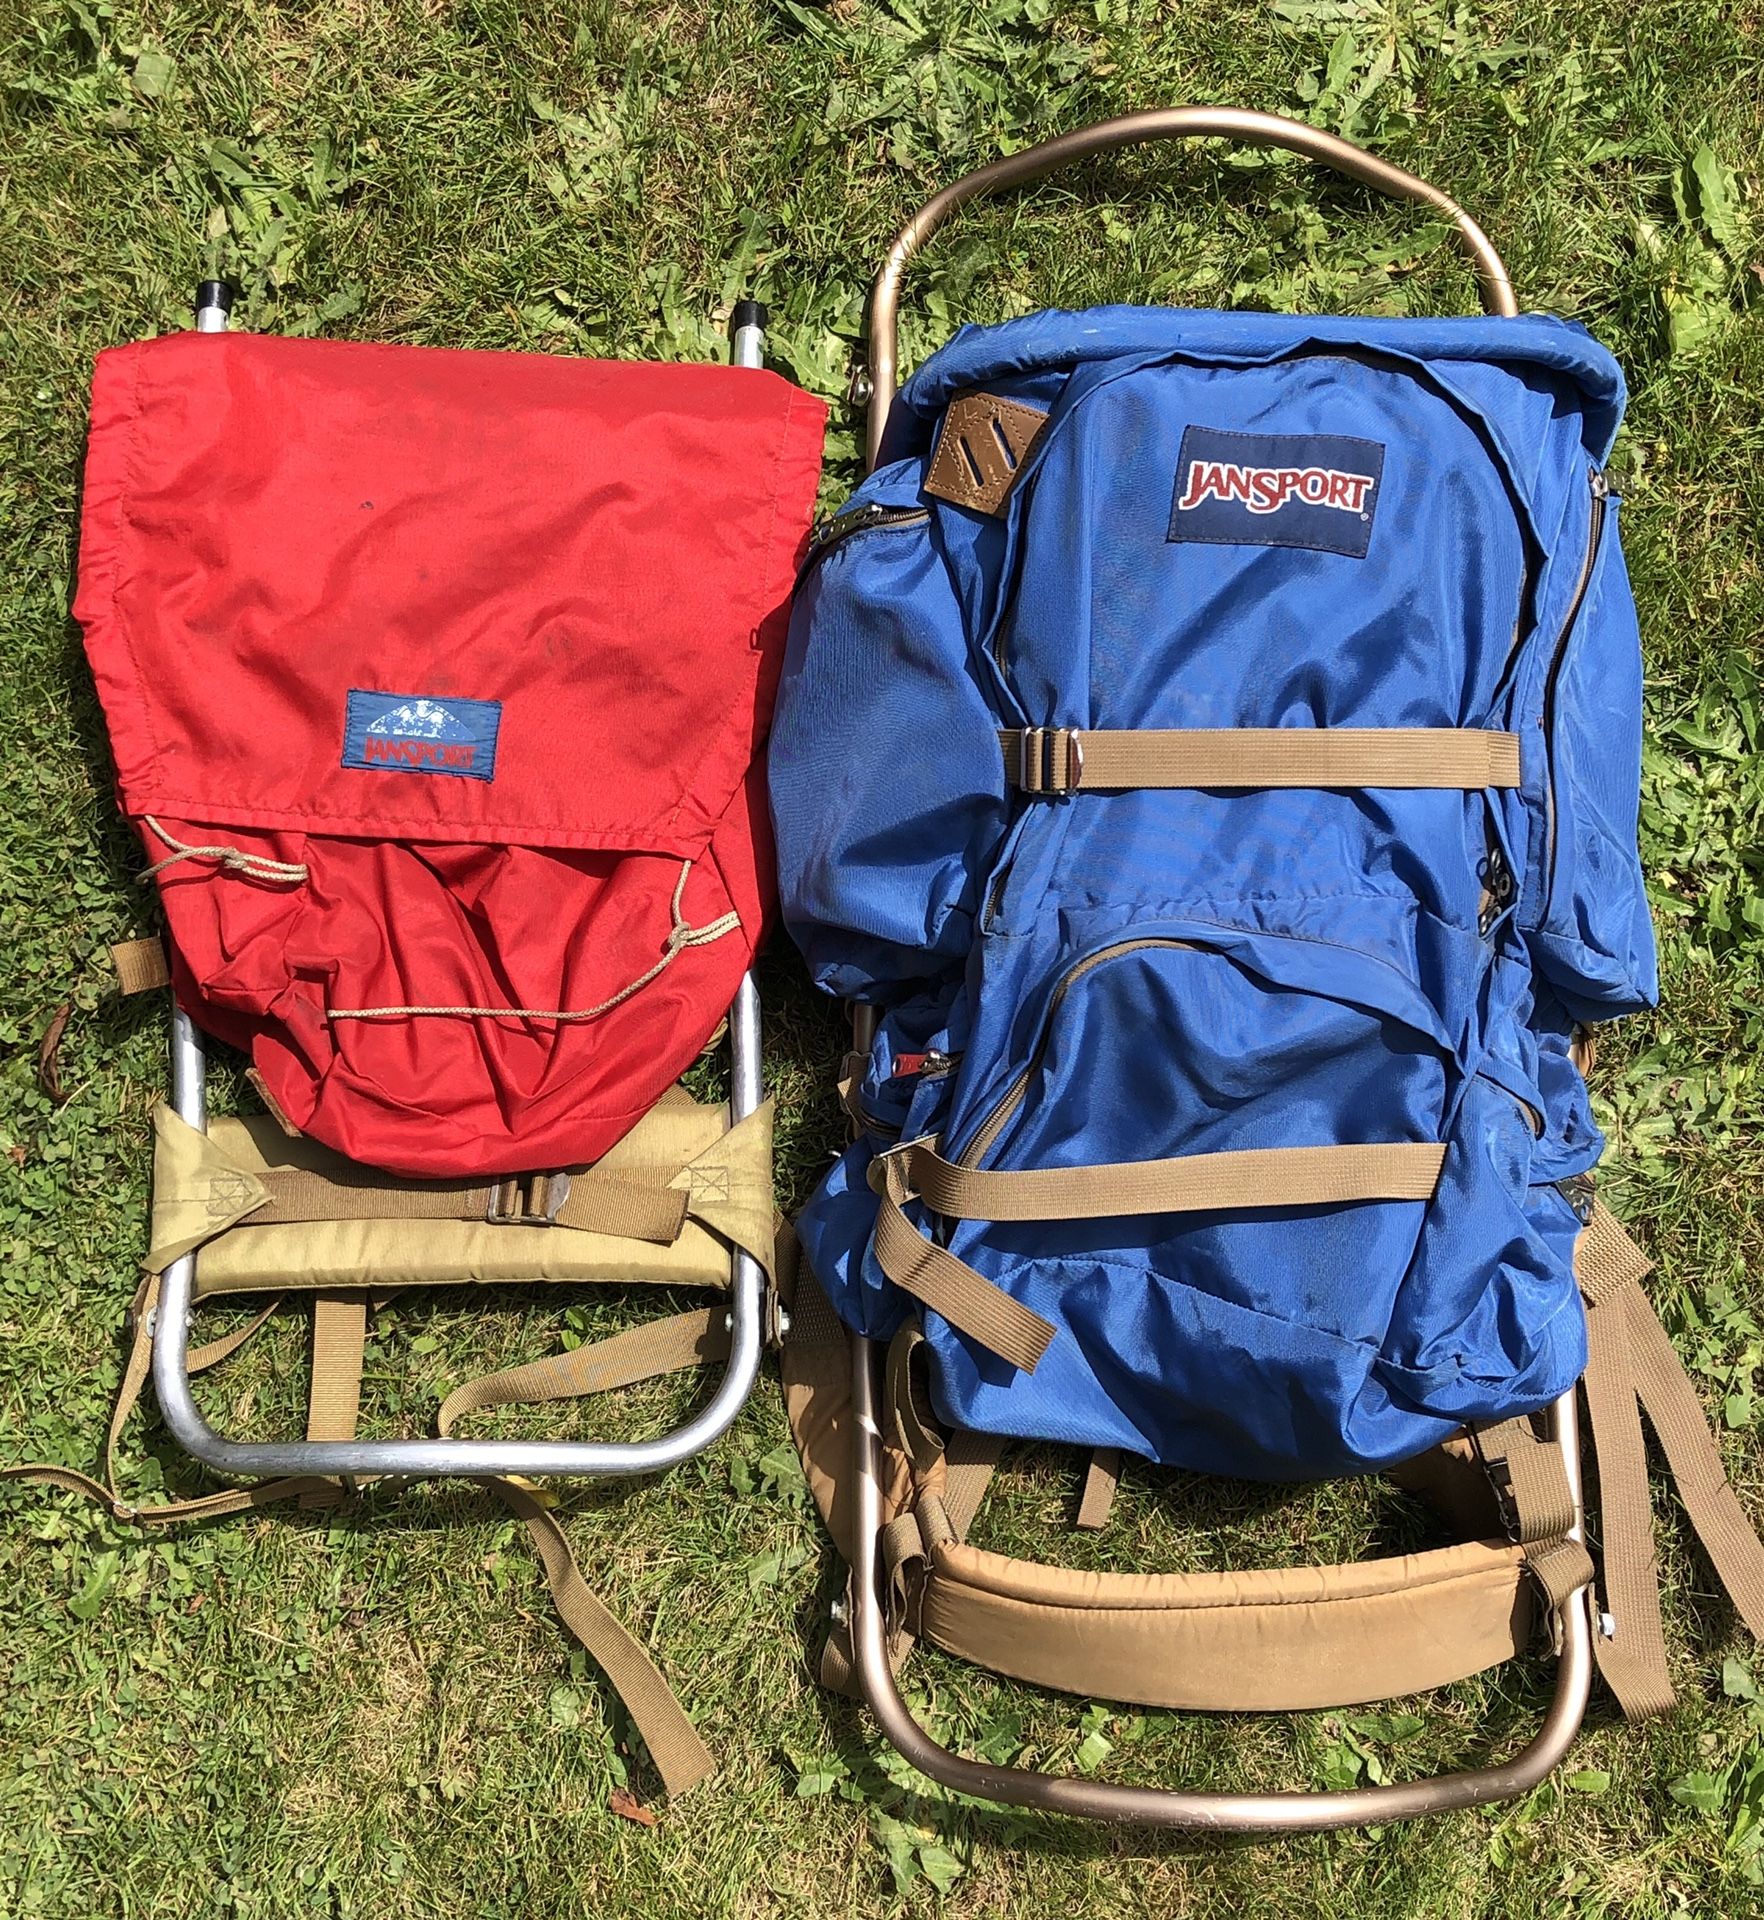 Two vintage Jansport hiking backpacks